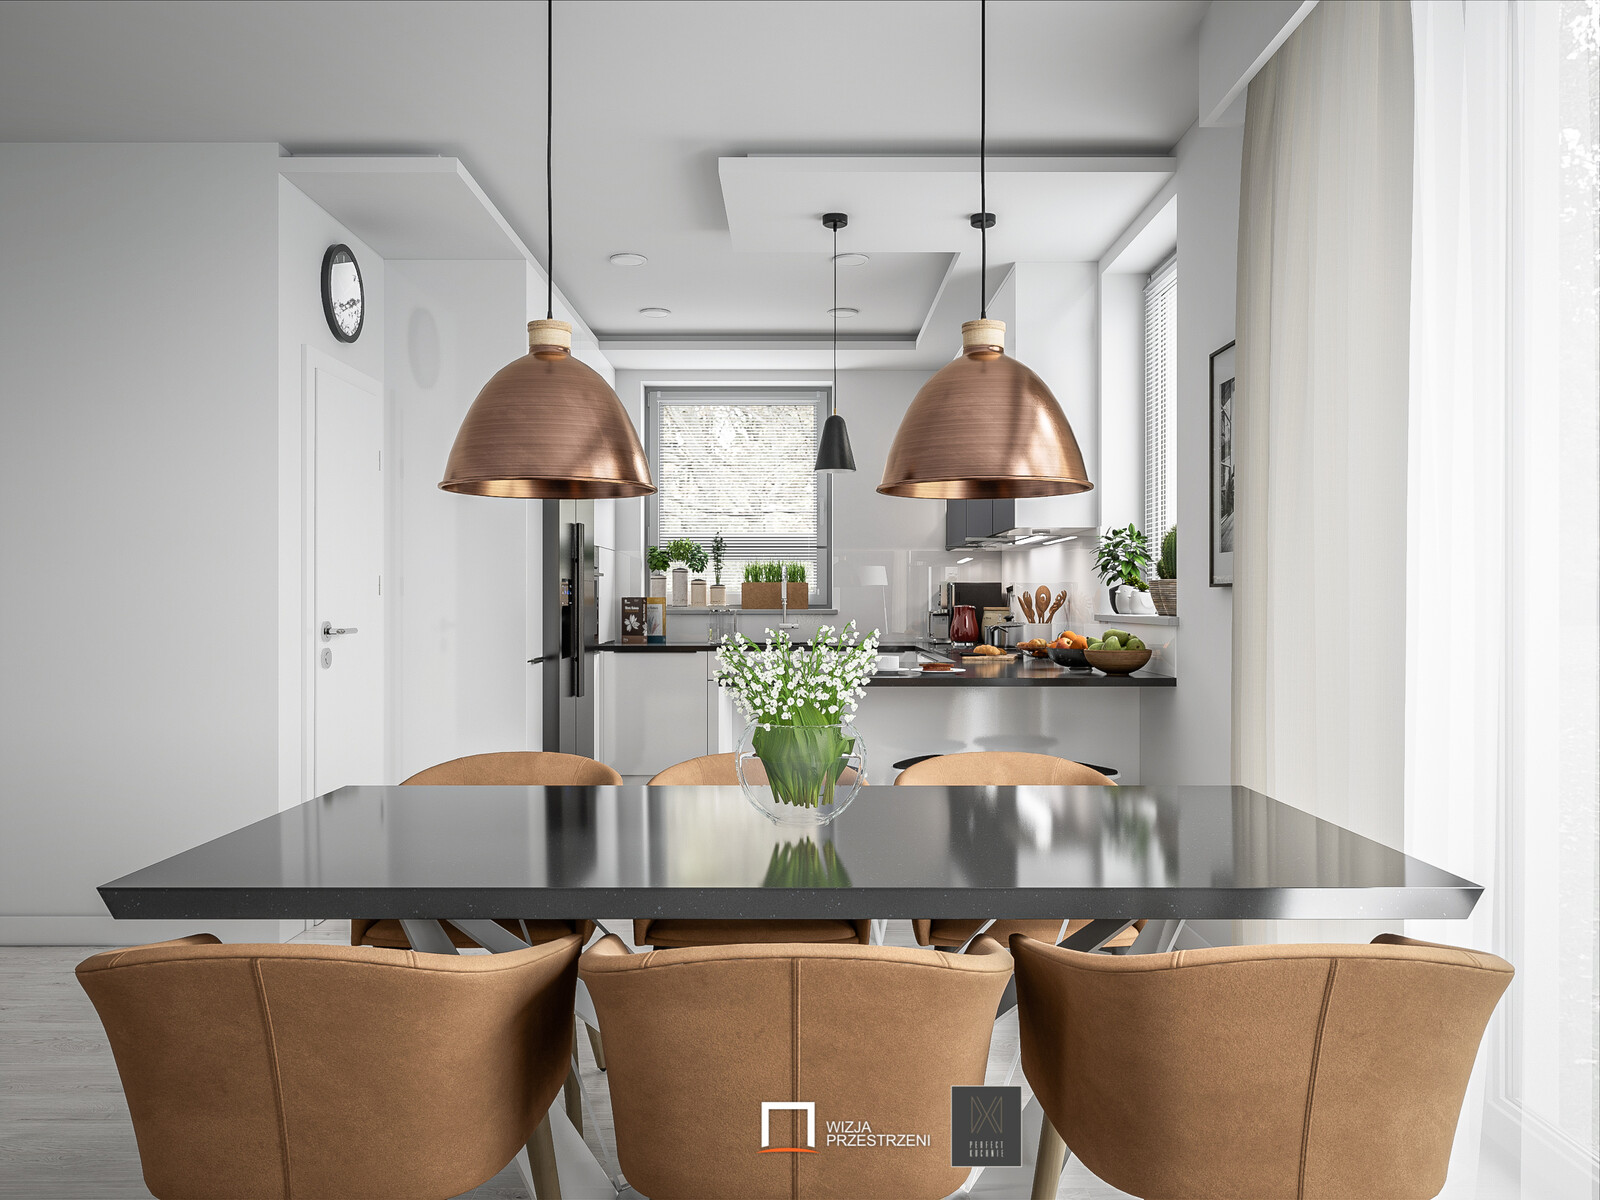 Typical Kitchen Interior Archviz - Unreal Engine 4 / UE4 + RTX technology